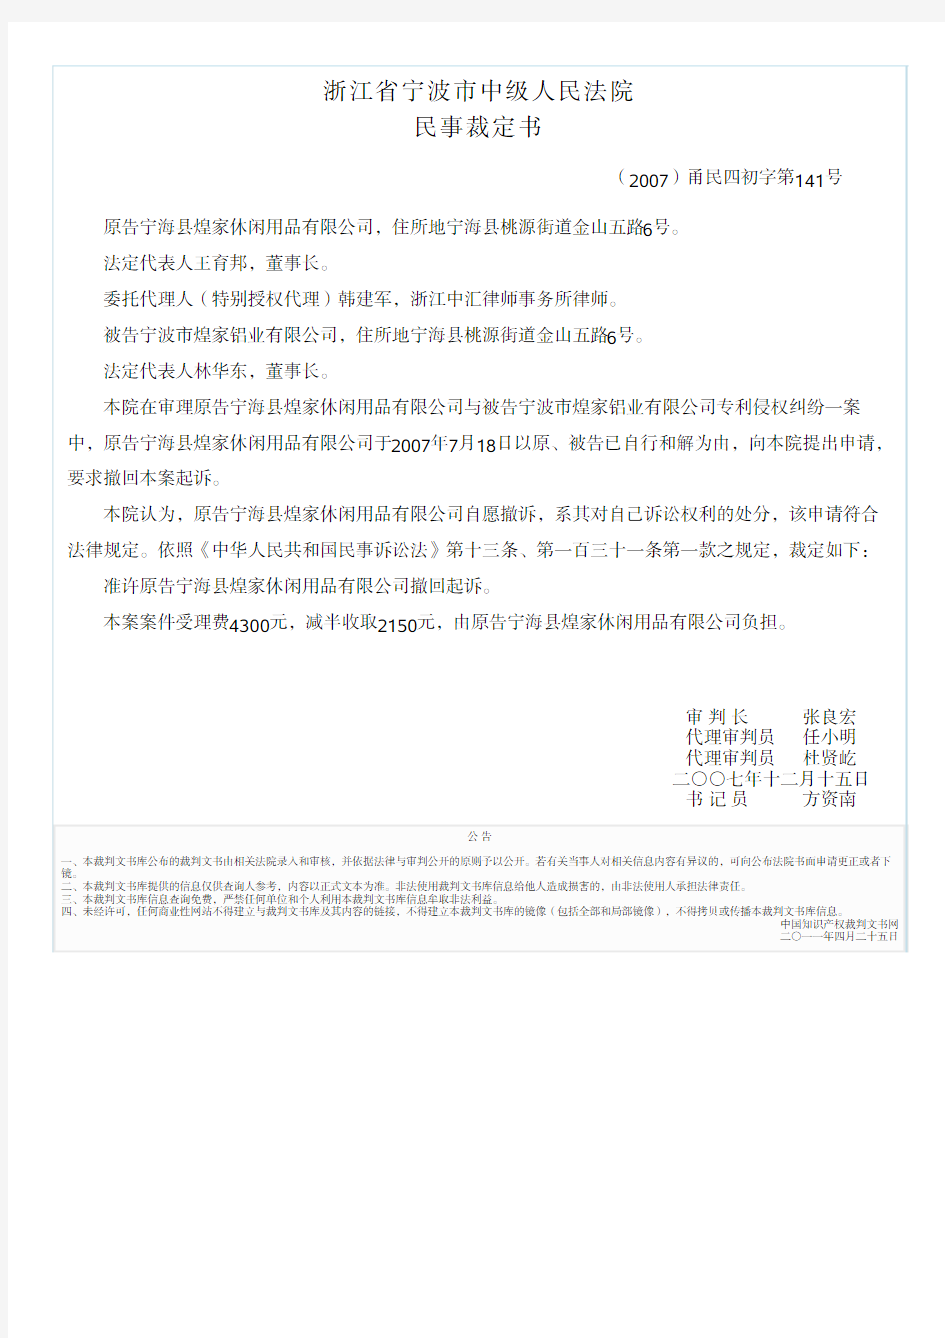 原告宁海县煌家休闲用品有限公司与被告宁波市煌家铝业有限公司专利